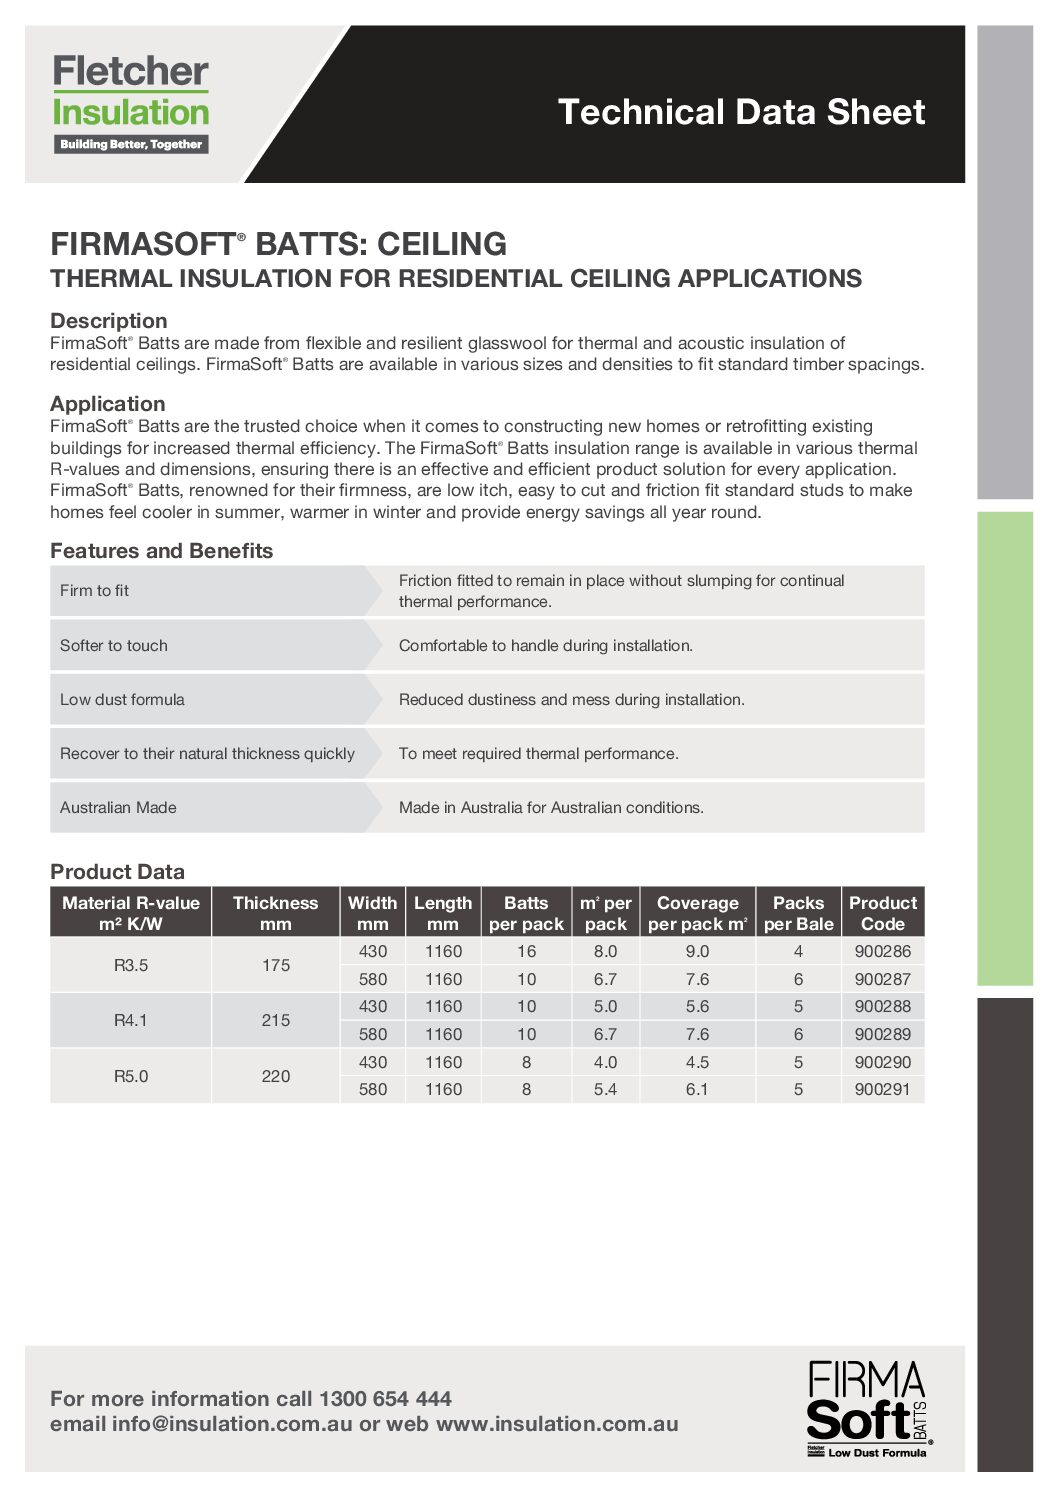 FirmaSoft™ Ceiling Batts Technical Data Sheet